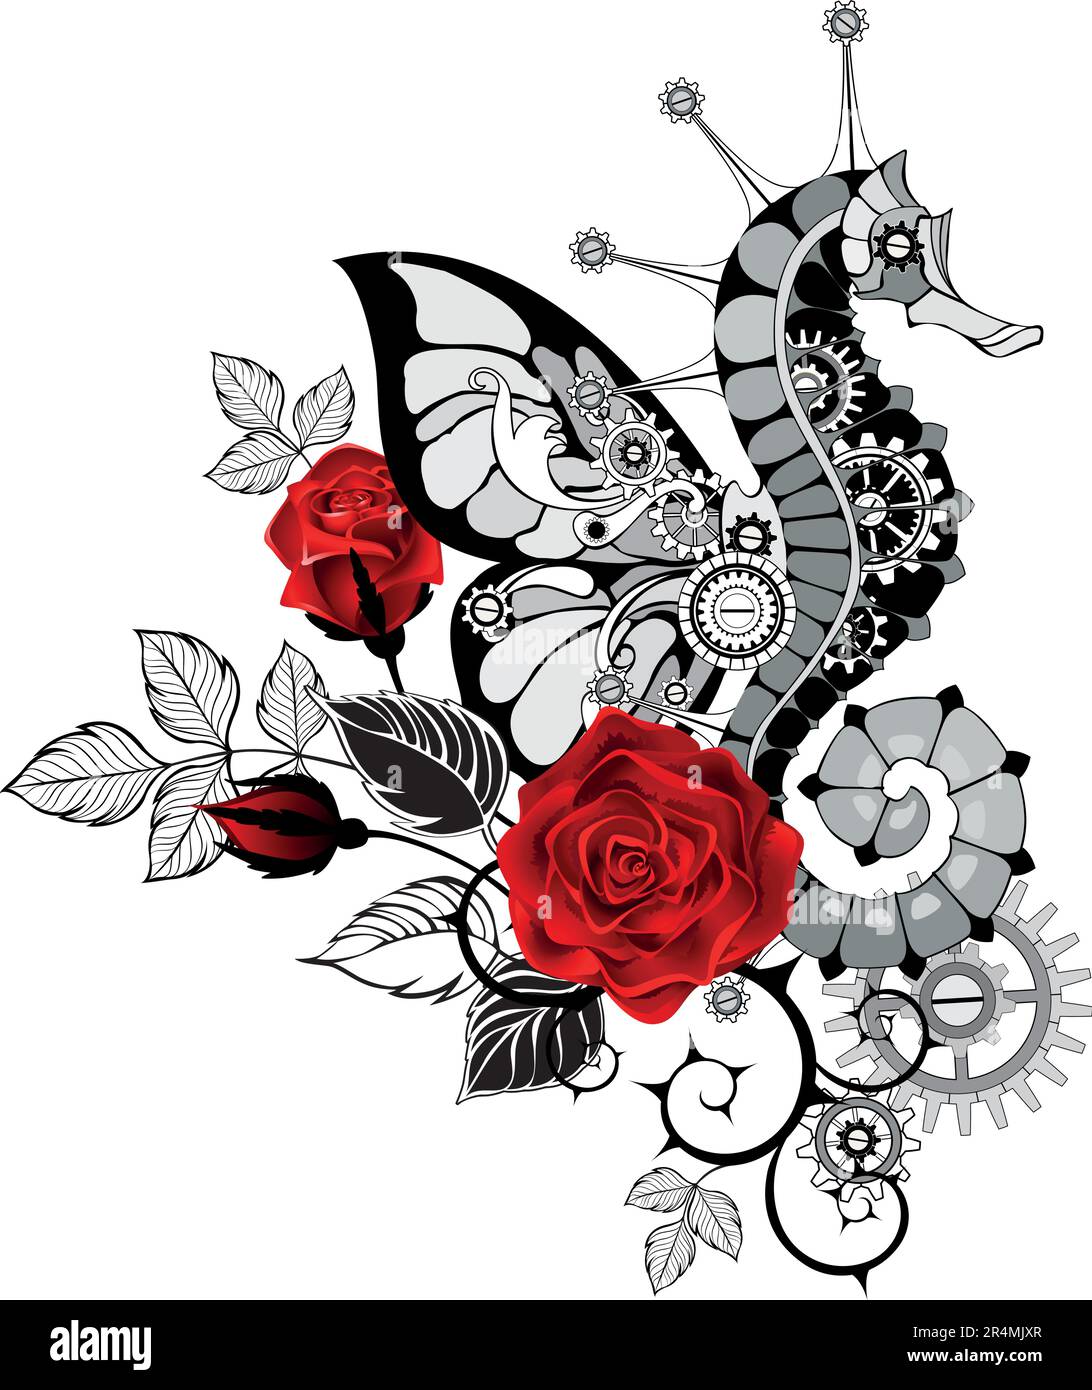 Steampunk-Komposition eines künstlerisch gezeichneten, mechanischen Seepferdchens mit Schmetterlingsflügel, dekoriert mit schwarzen Stämmen und blühenden roten Rosen o Stock Vektor